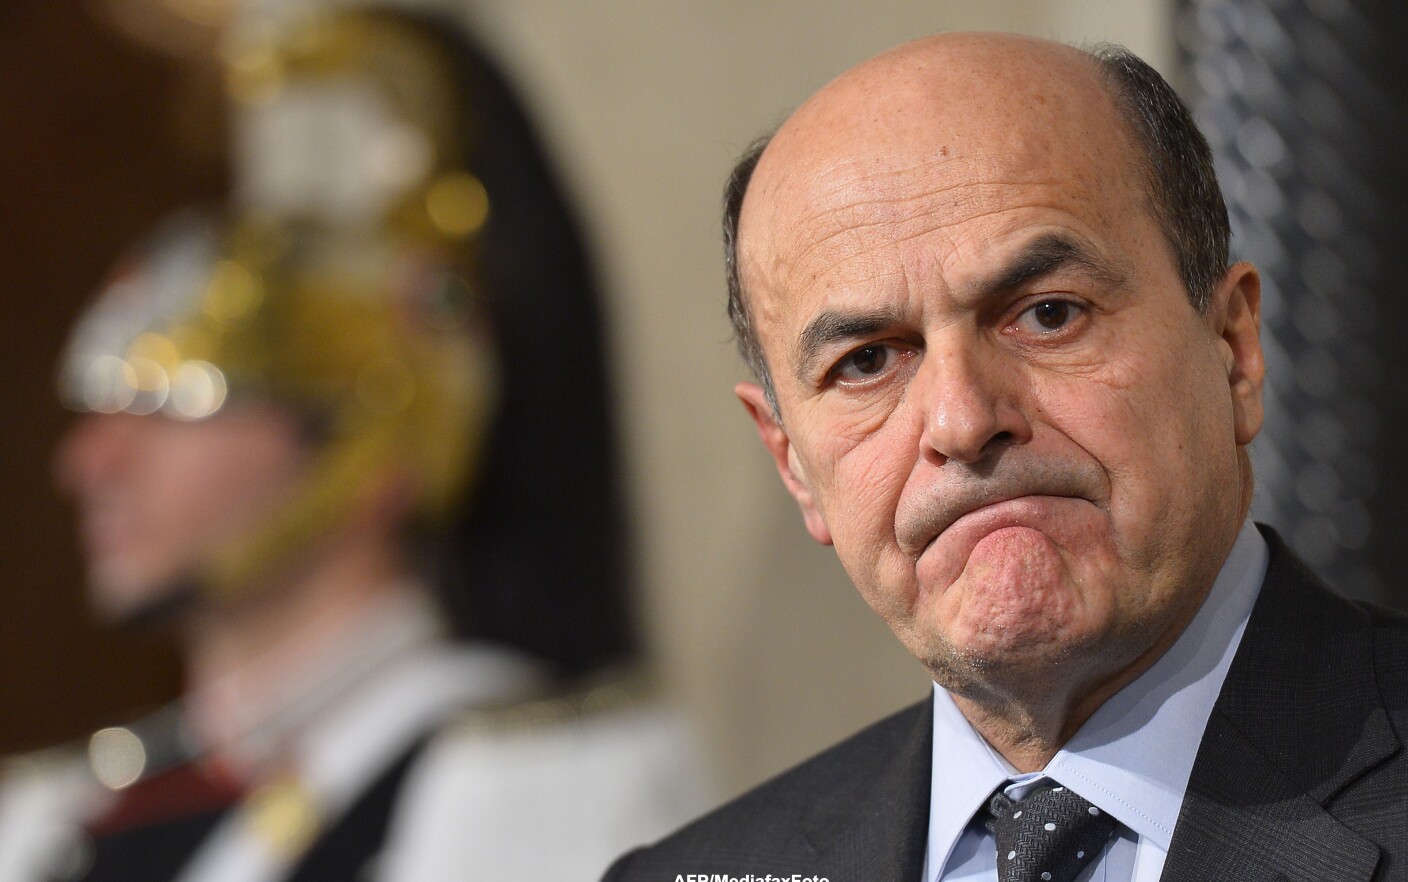 La crisi politica in Italia.  Il primo ministro designato chiede aiuto al presidente per la formazione del governo